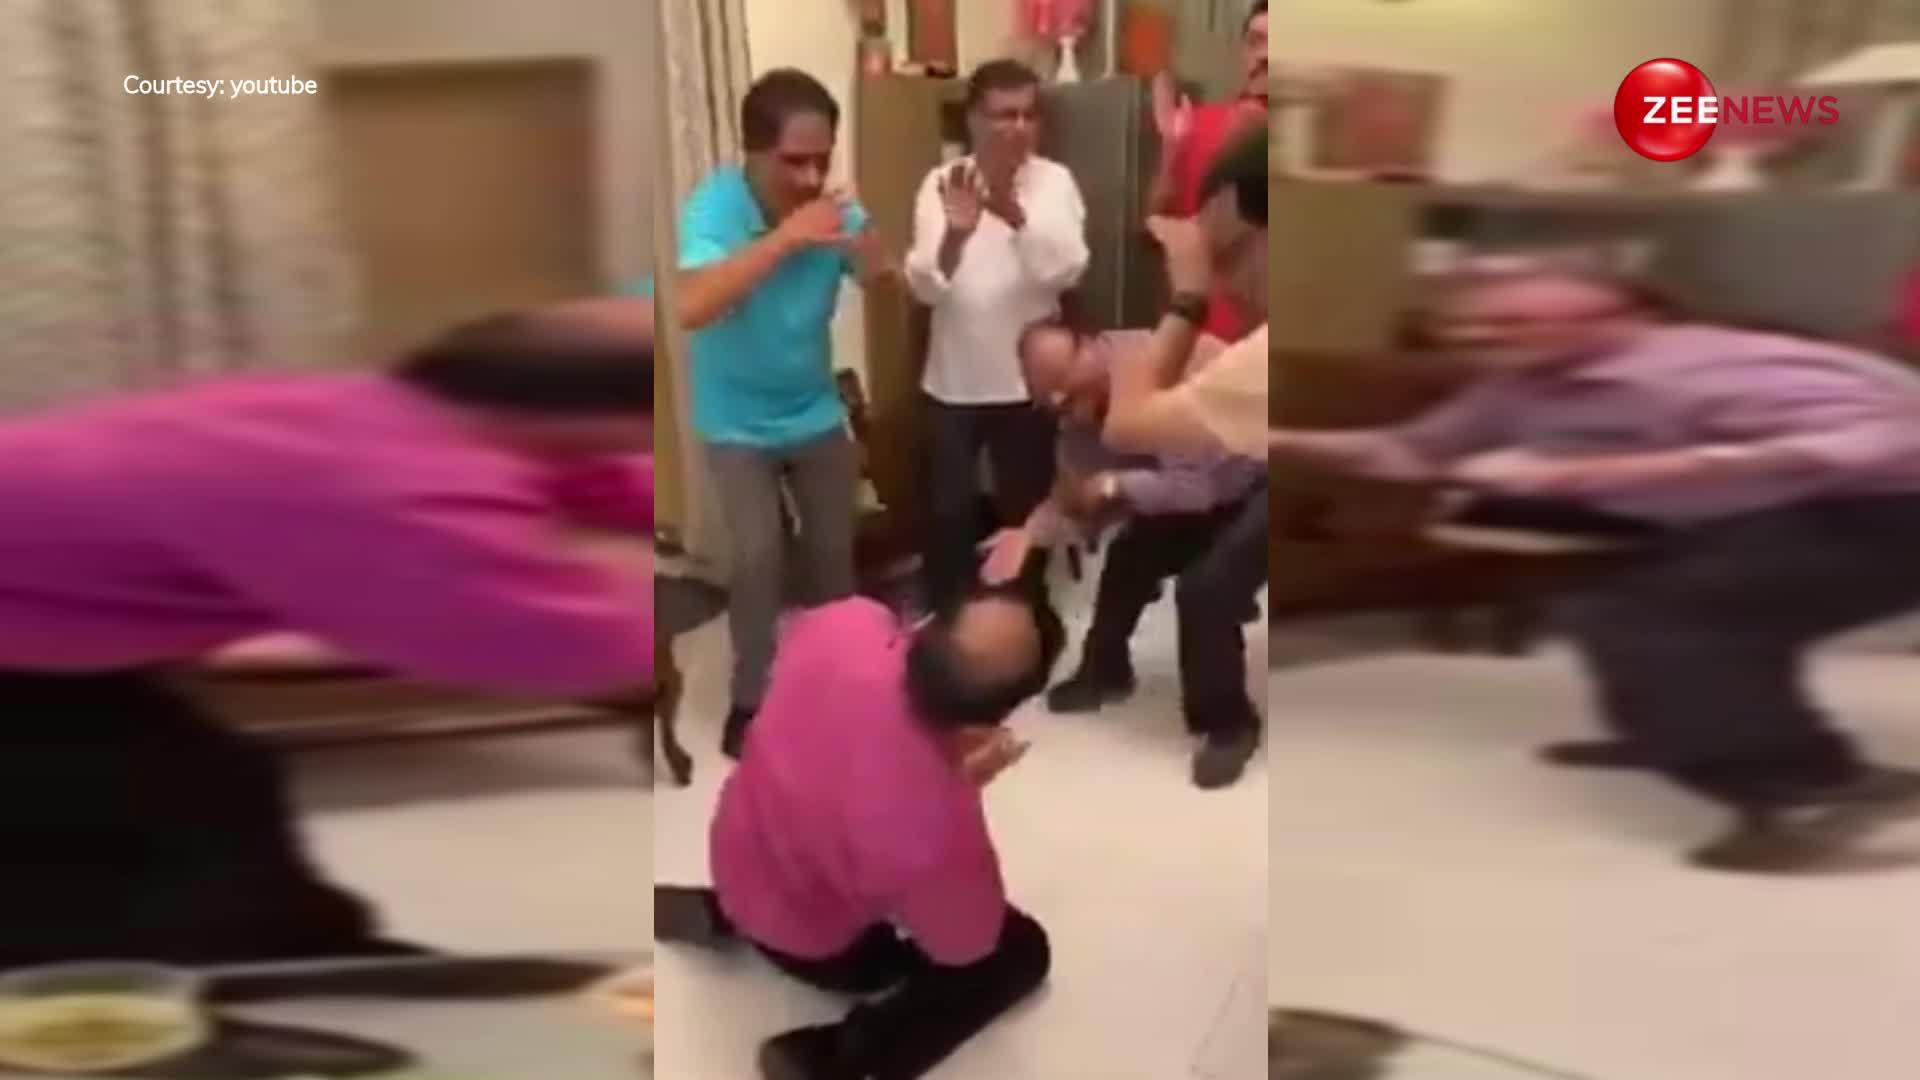 रात की पार्टी के बाद अंकल ने जमीन पर लेटकर किया नागिन डांस, वीडियो देख लोग बोले- ये तो एनाकोंडा डांस है...